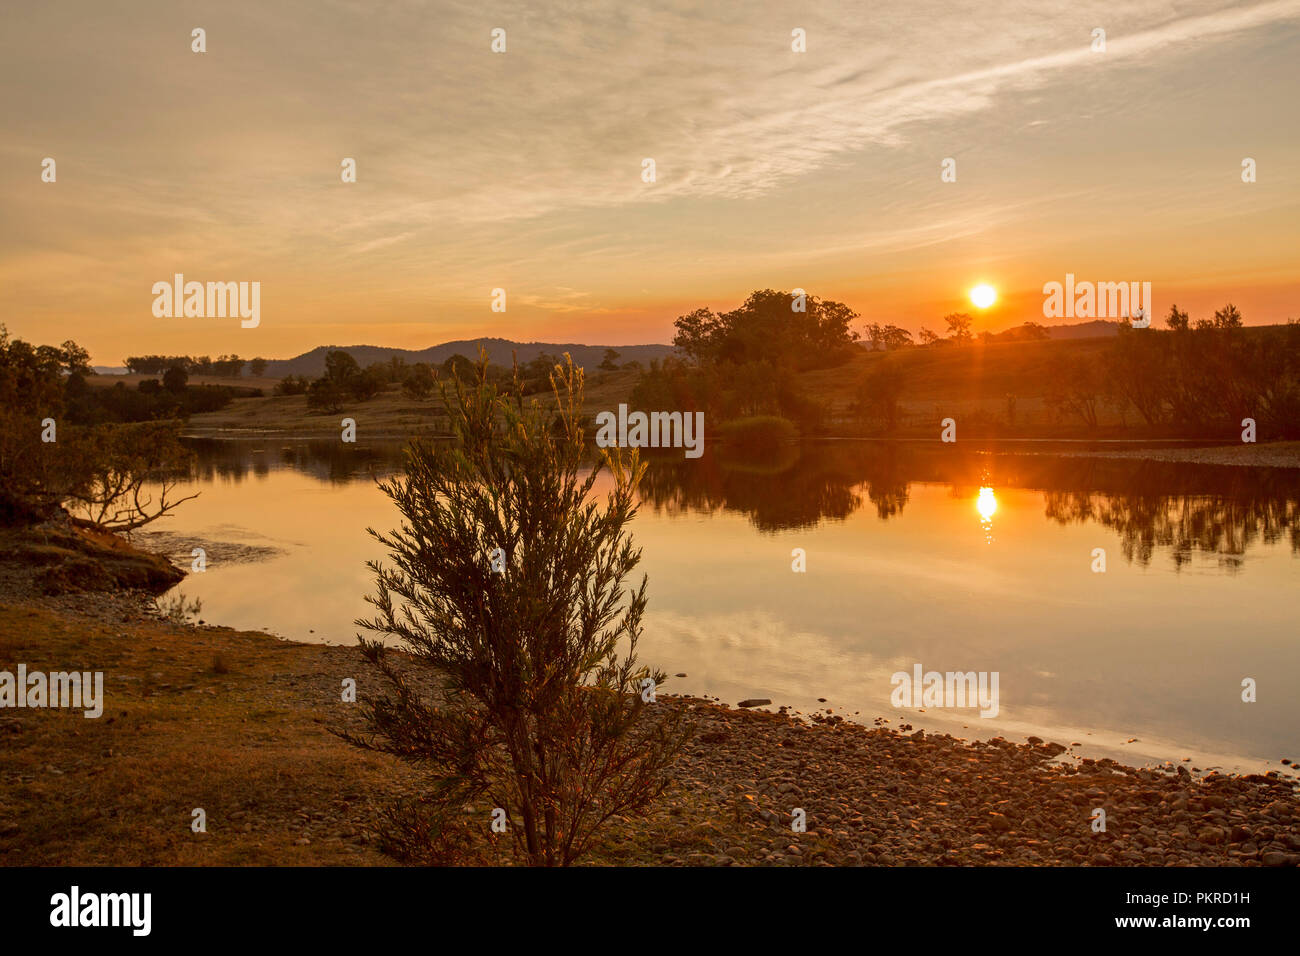 Ciel orange vif avec sun rising over et se reflètent dans les eaux calmes de la rivière Clarence à l'aube à Lilydale en NSW Australie Banque D'Images